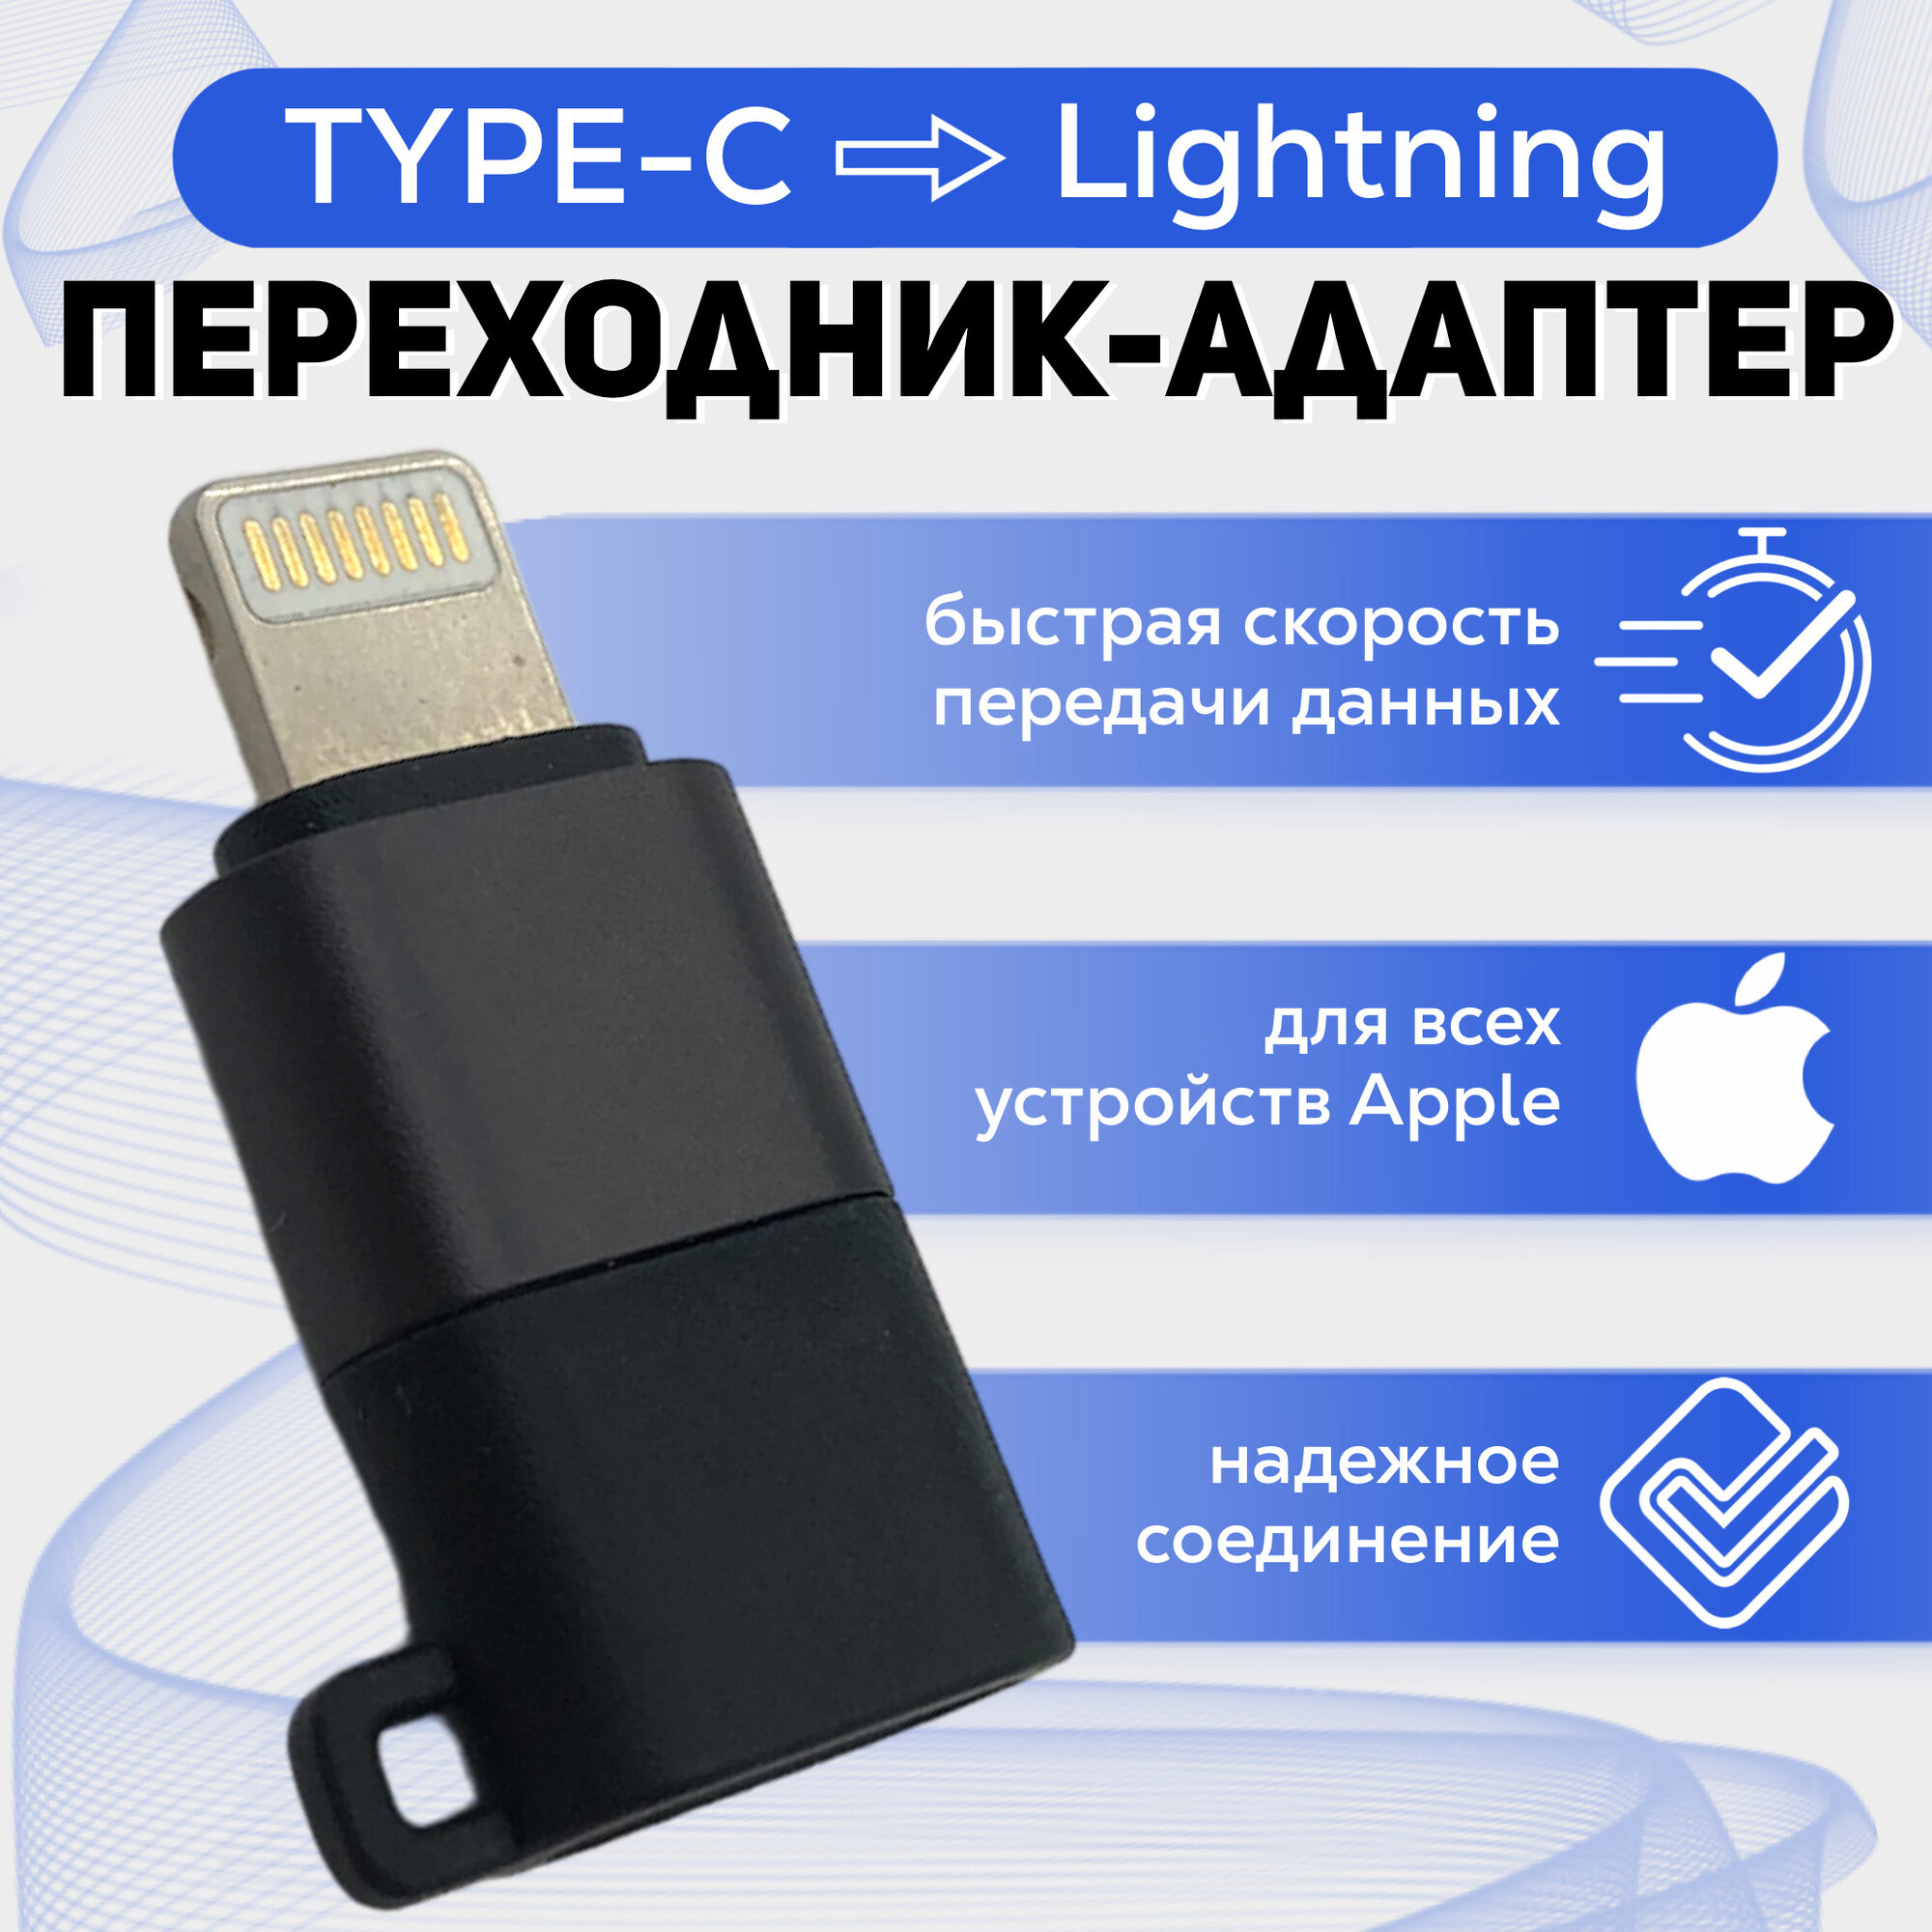 Переходник (адаптер) apple lightning – USB Type C, черный